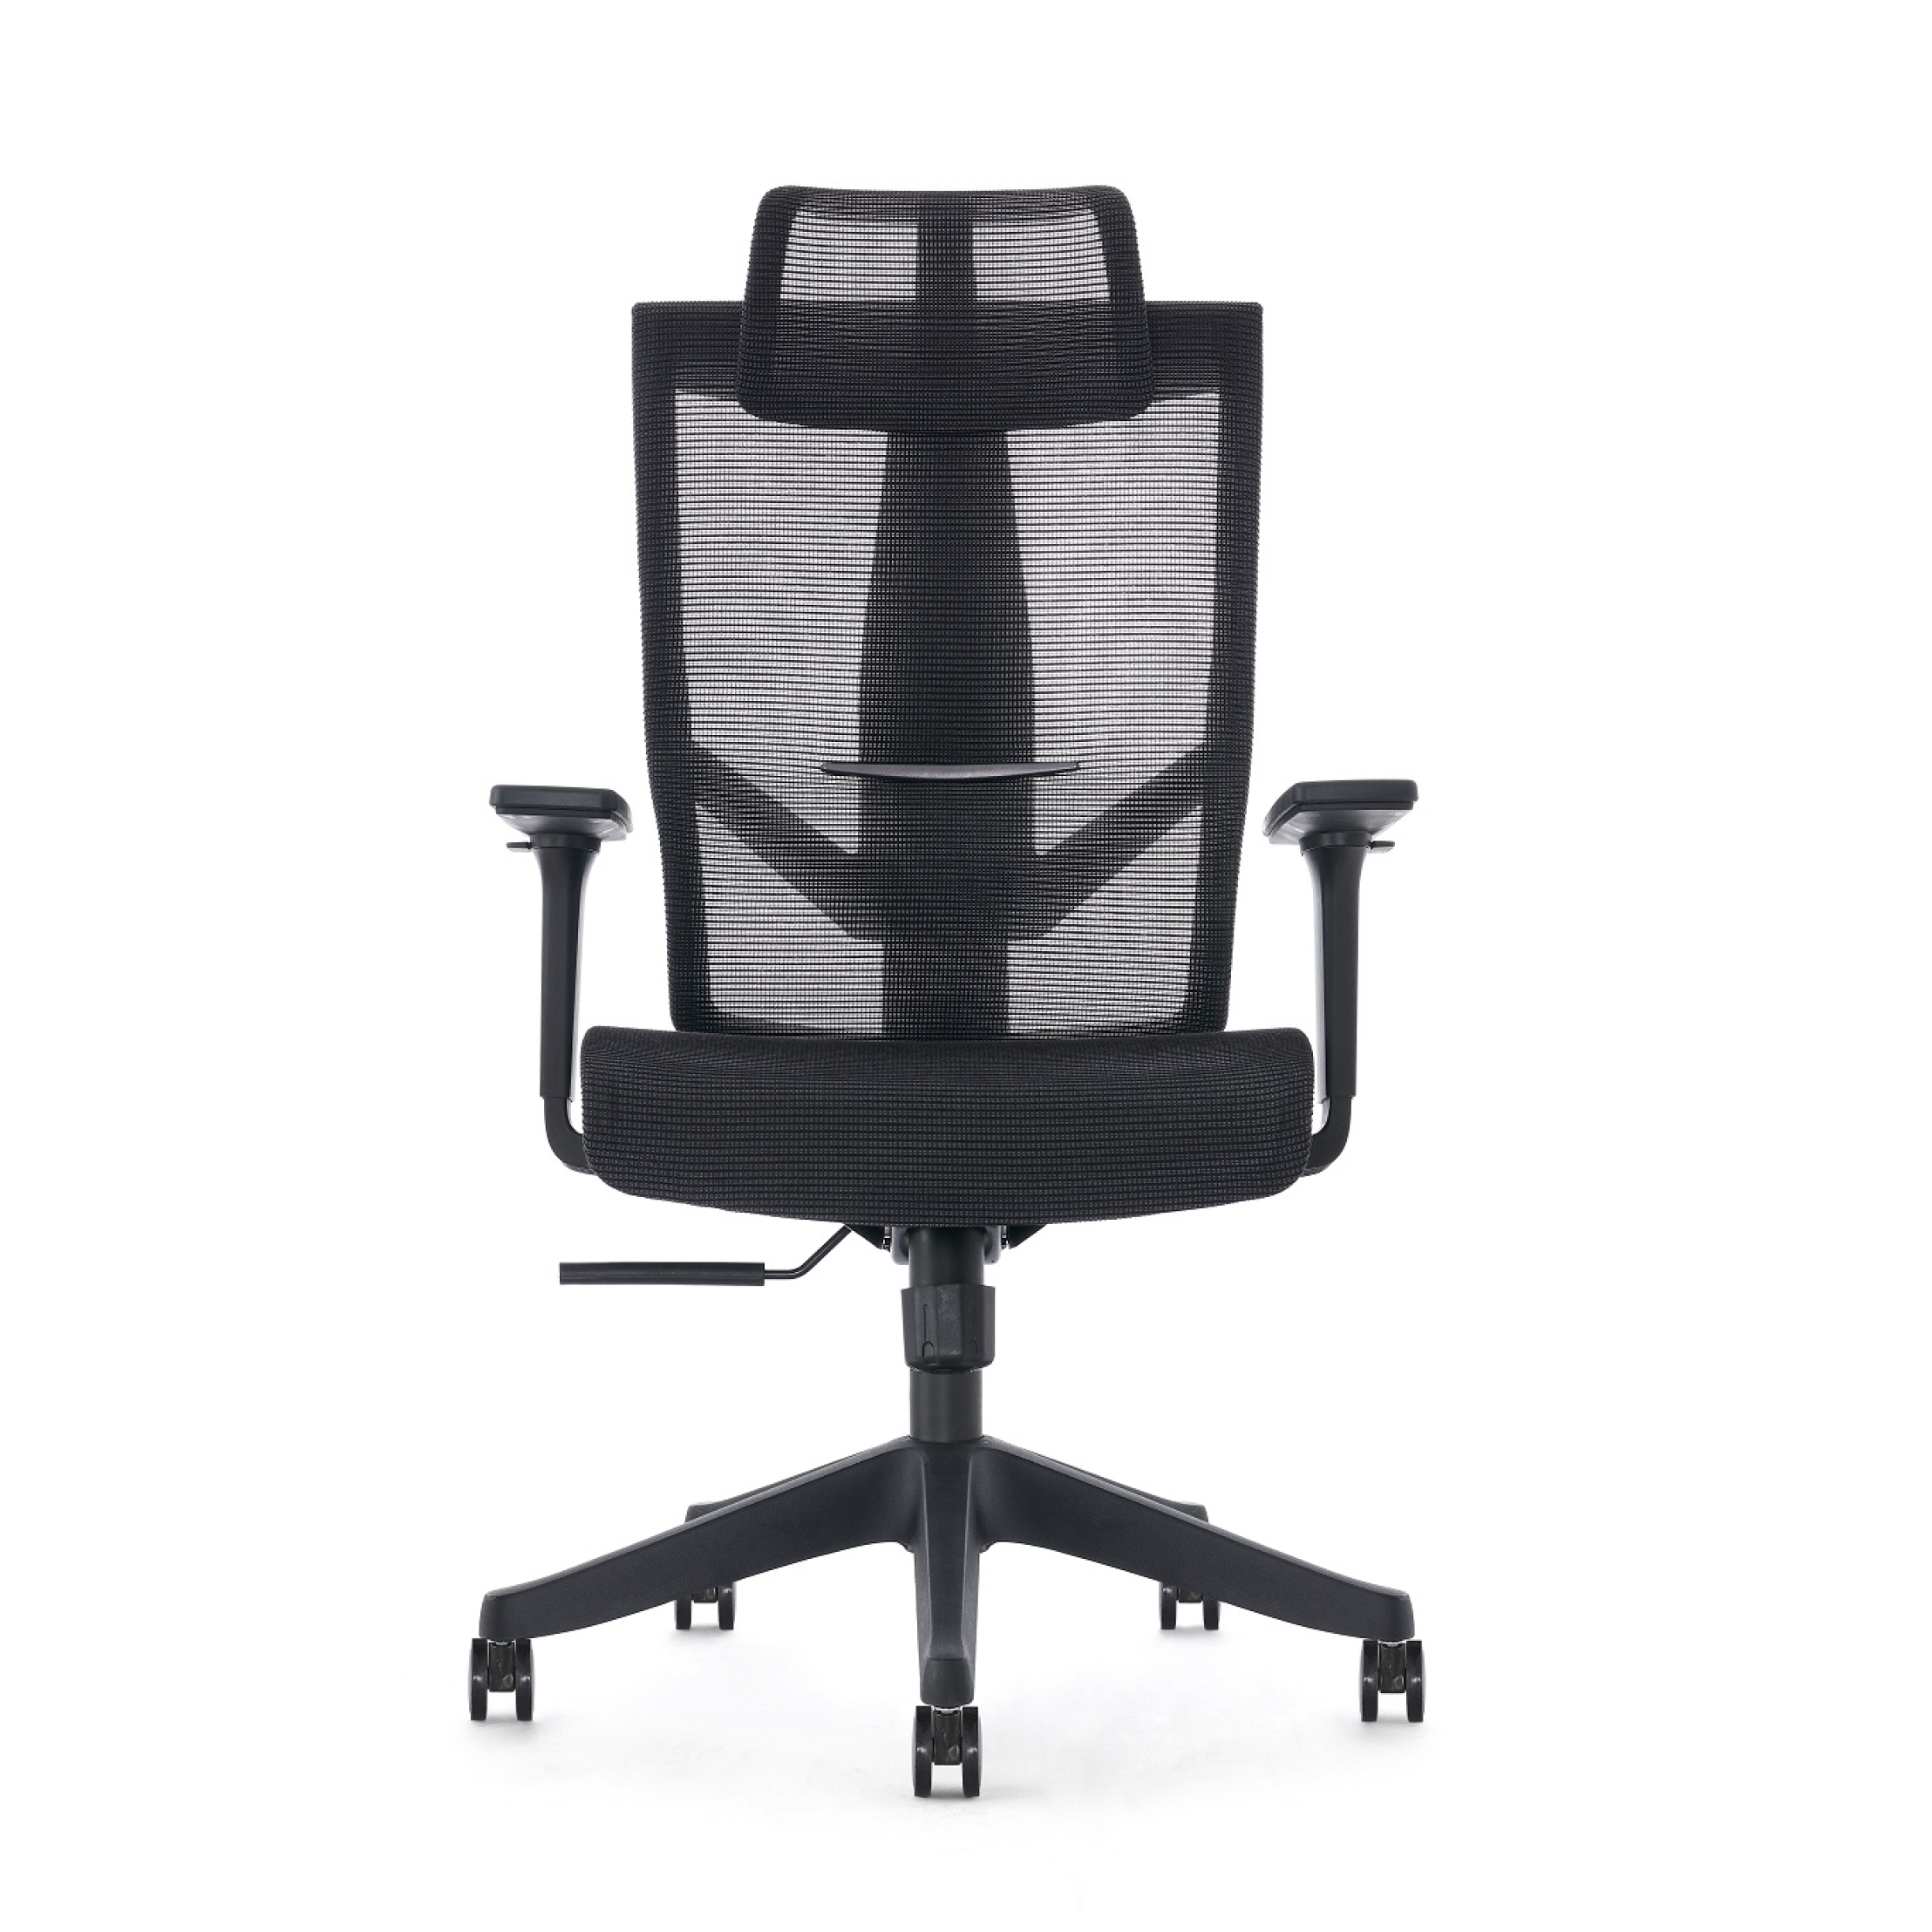 Aero Chair Mesh Ergonomic - black by Navoergonomic